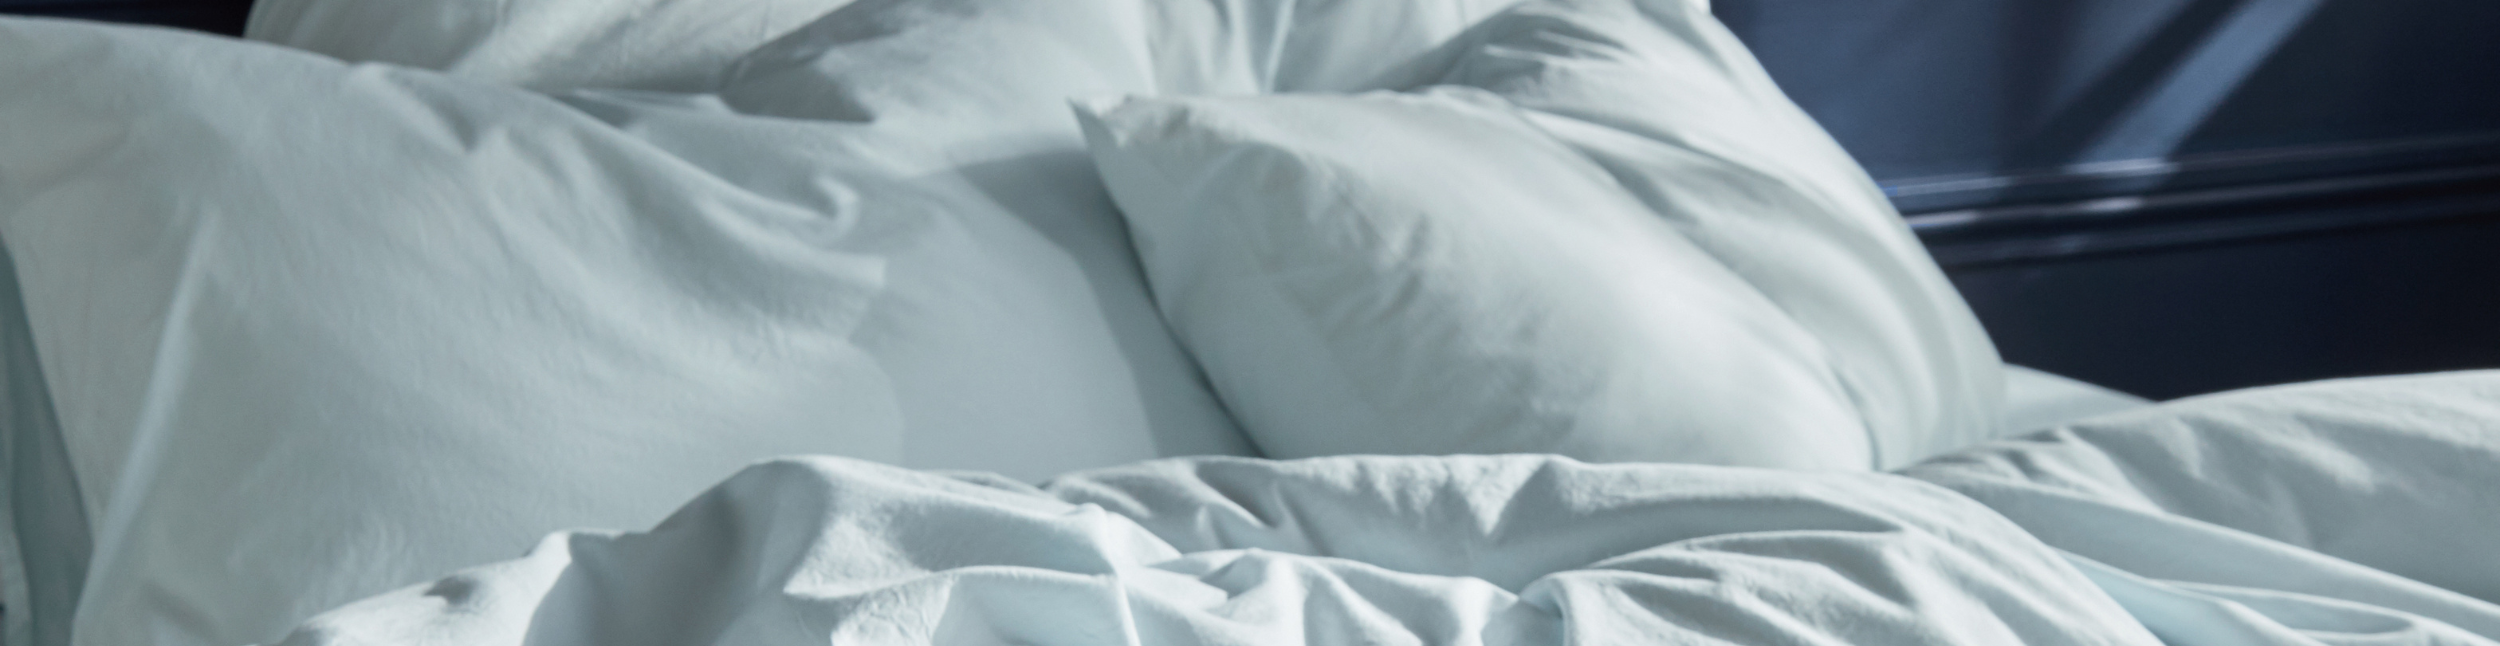 Taie d'oreiller anti-transpiration pour enfant - Compatible avec